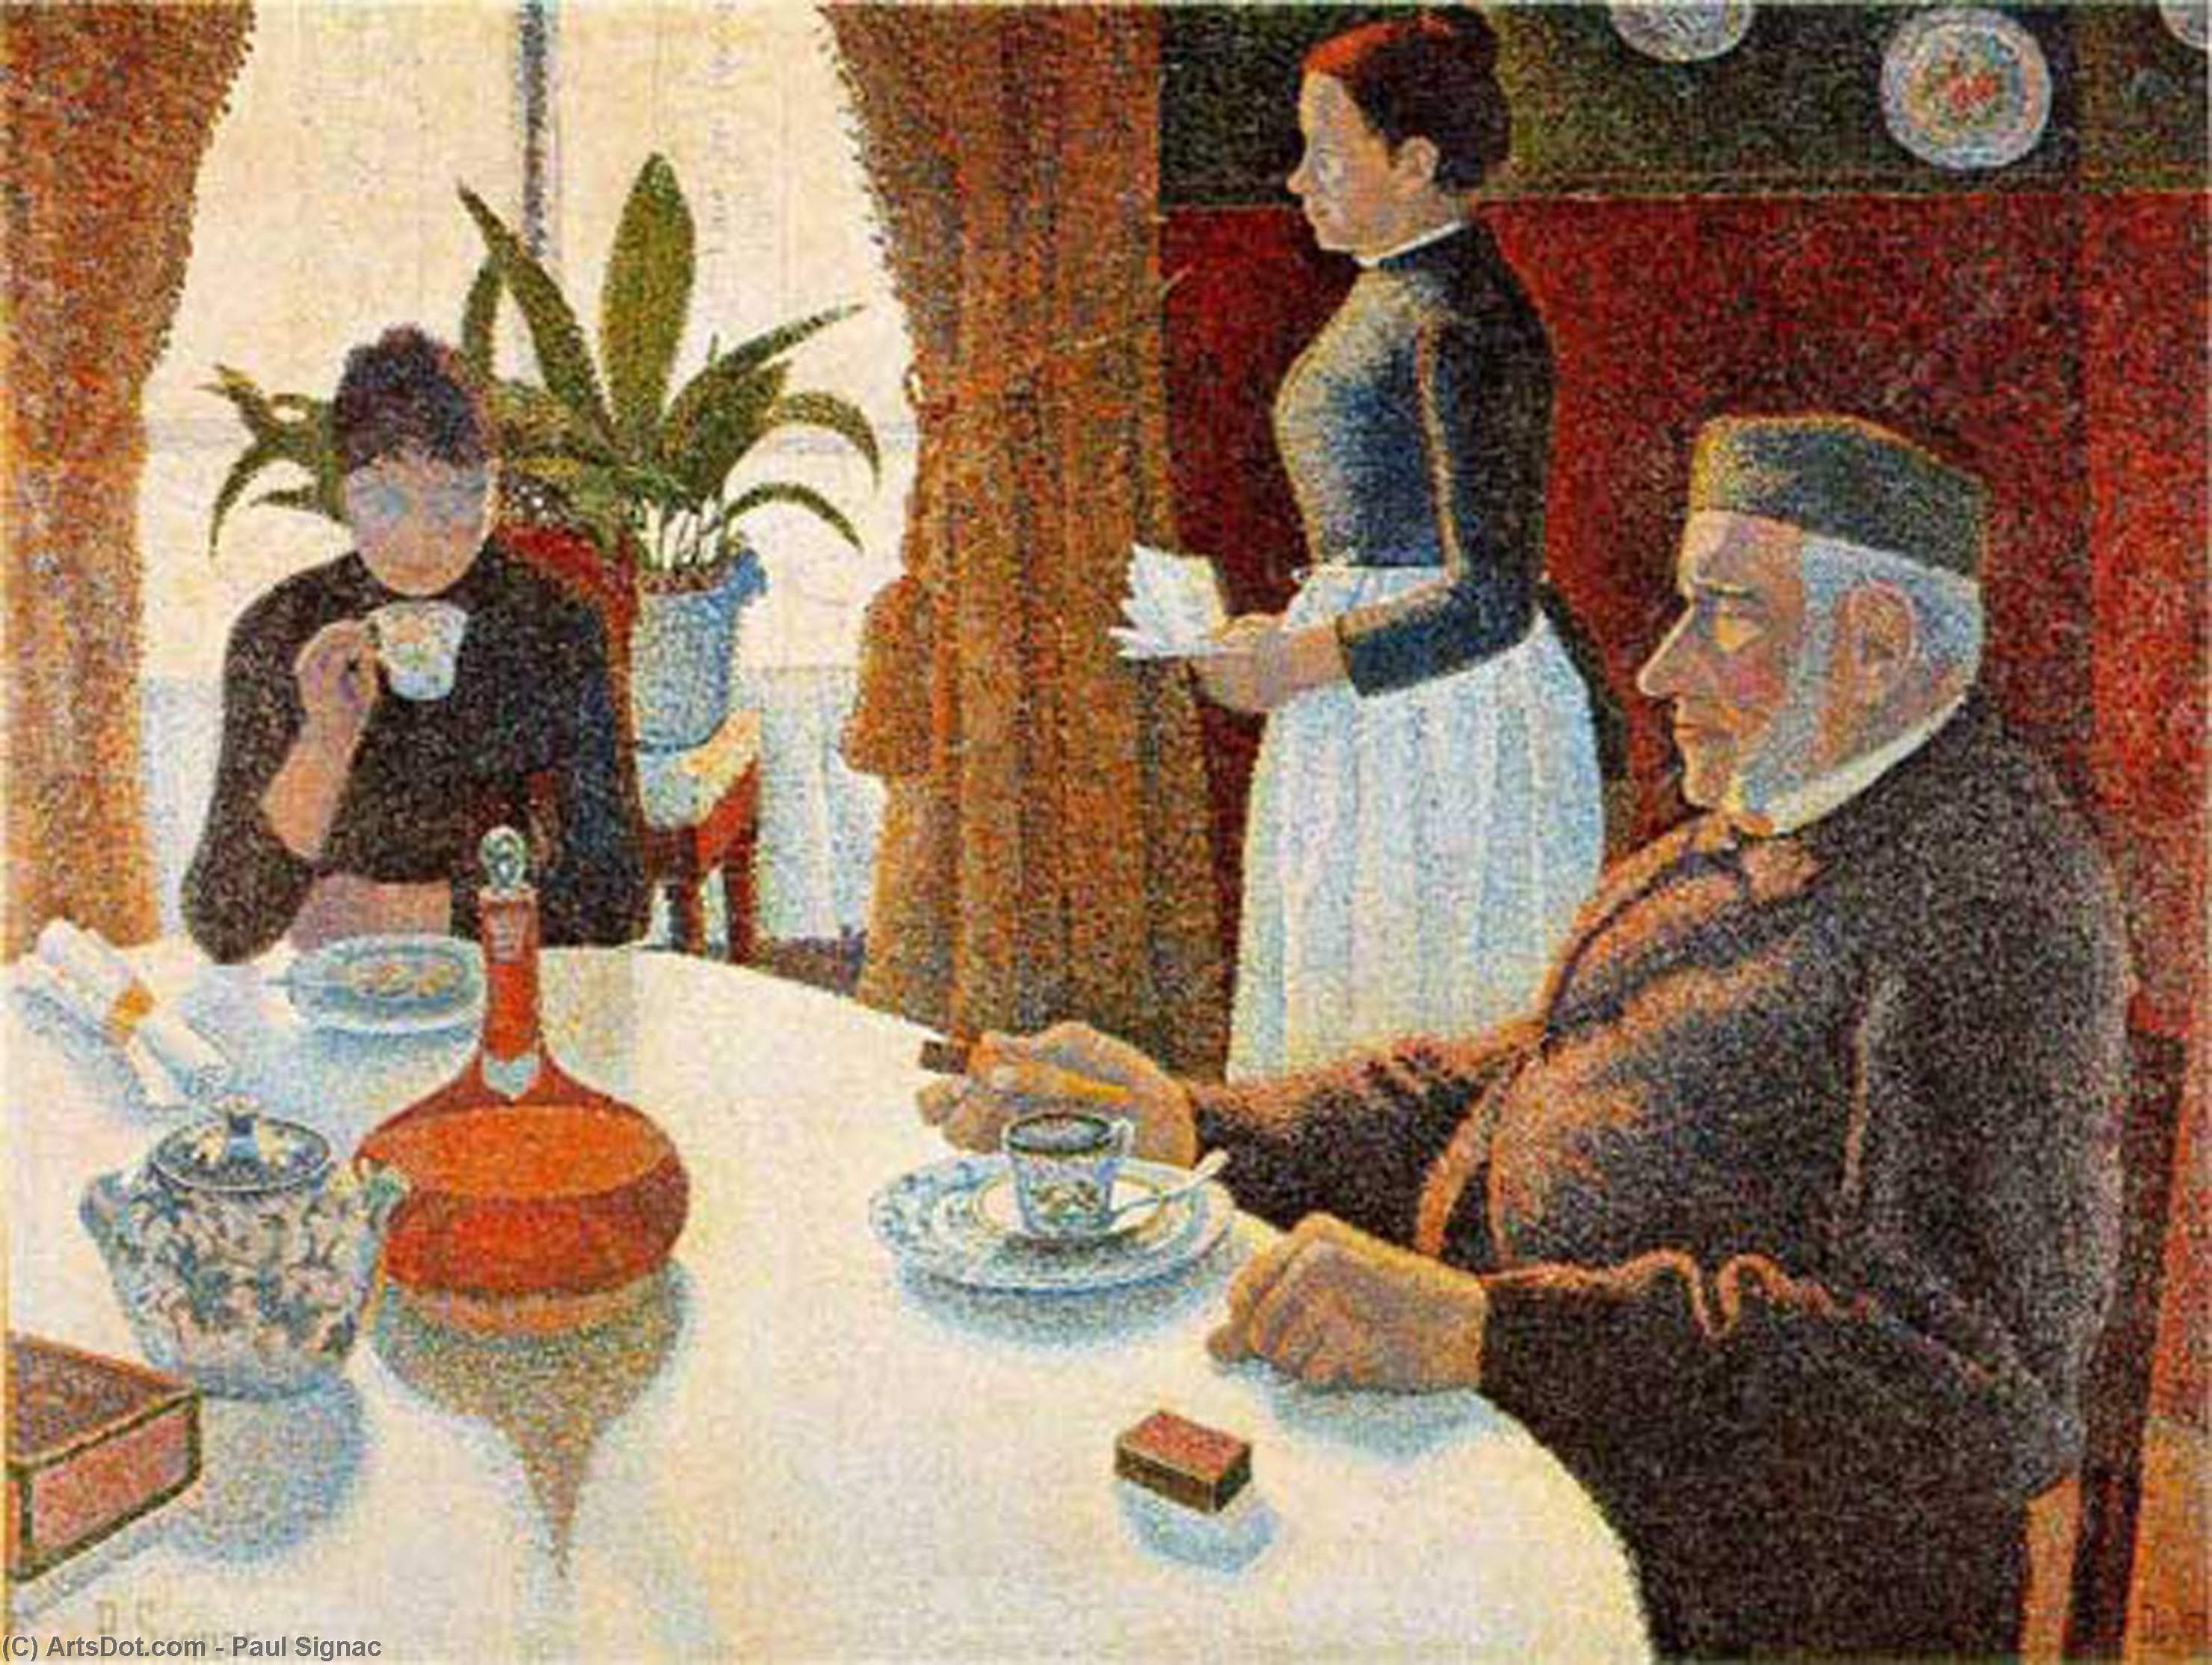 Ordinare Stampe Di Qualità Del Museo Colazione (La sala da pranzo), 1887 di Paul Signac (1863-1935, France) | ArtsDot.com